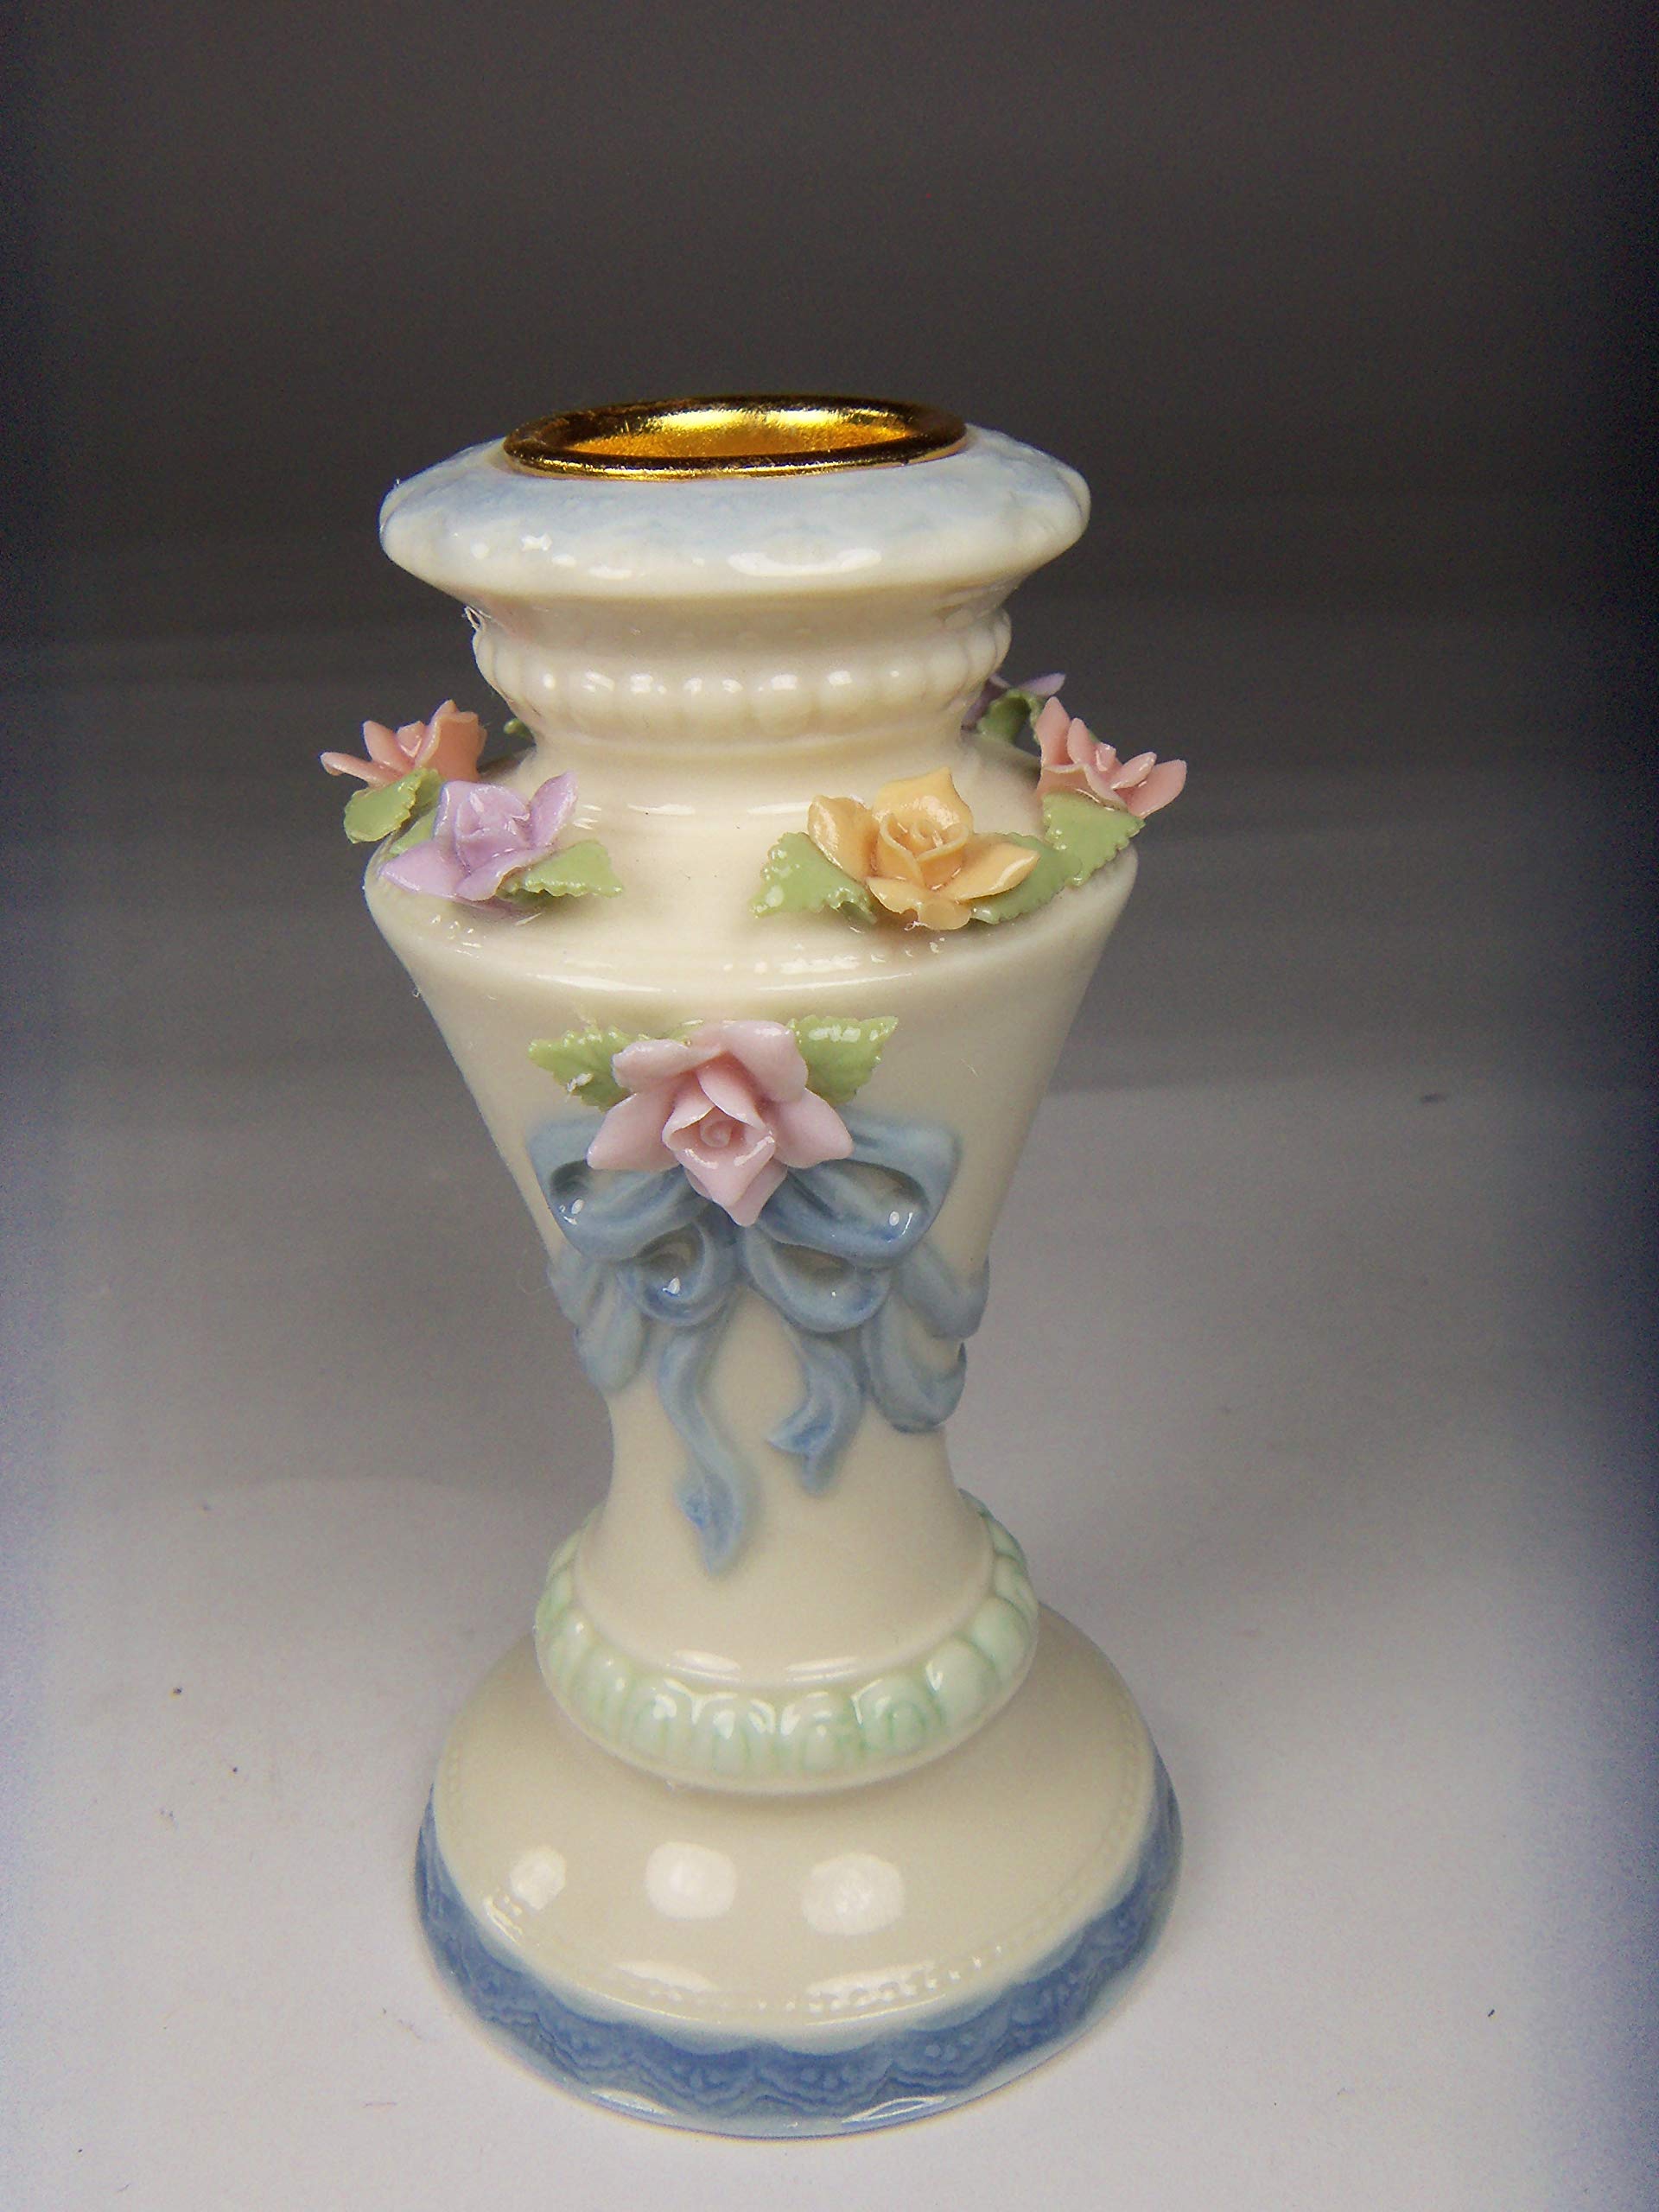 Fine Elegant Porcelain Rose Flowers on Column Design Taper Candle Holder (Candle NOT Included), 4-1/4" H